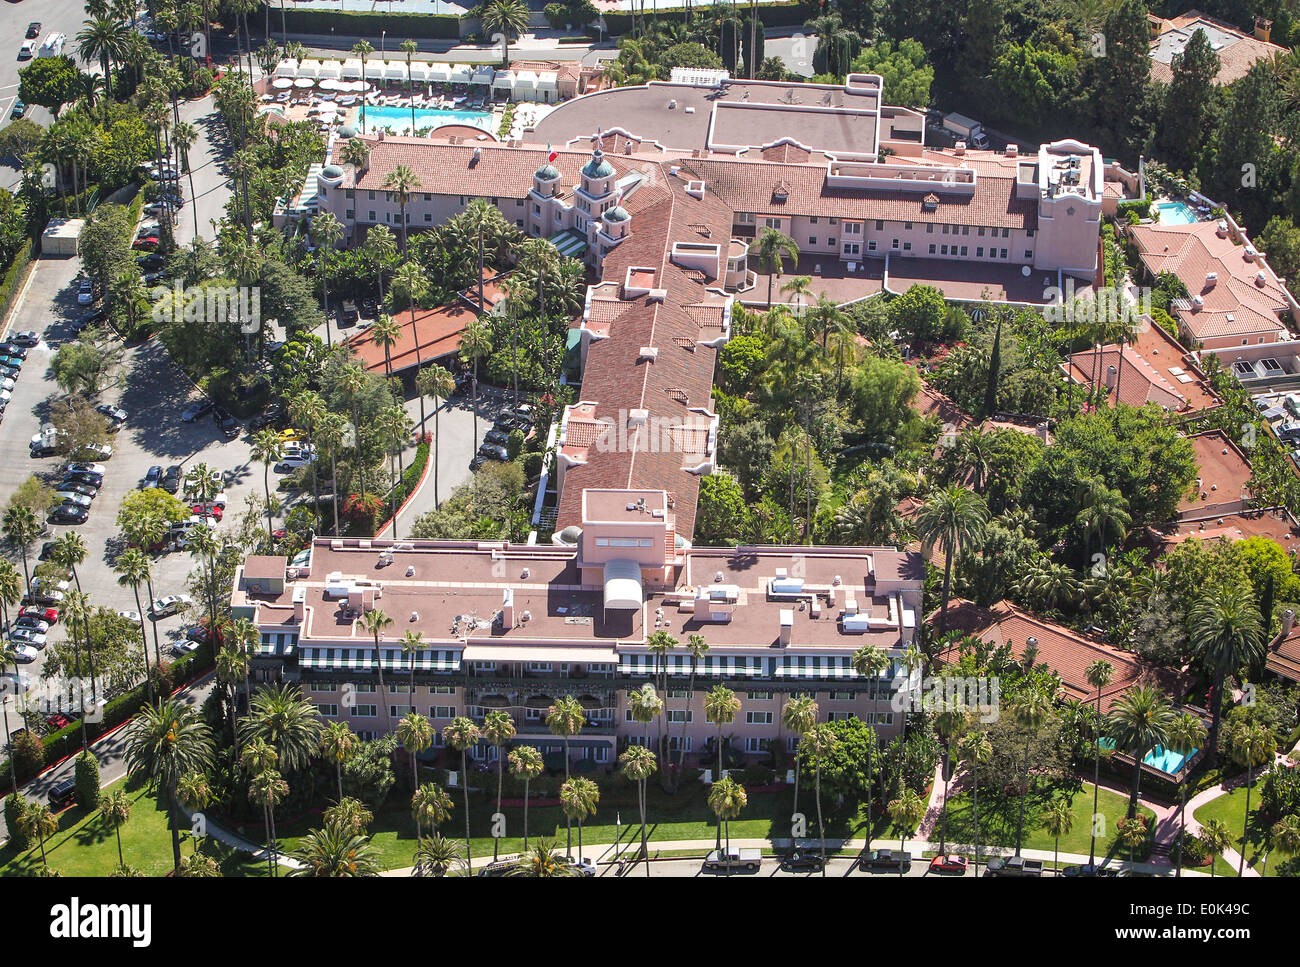 Vista aerea del Beverly Hills Hotel di proprietà dal Sultano Hassanal Bolkiah del Brunei. Foto Stock